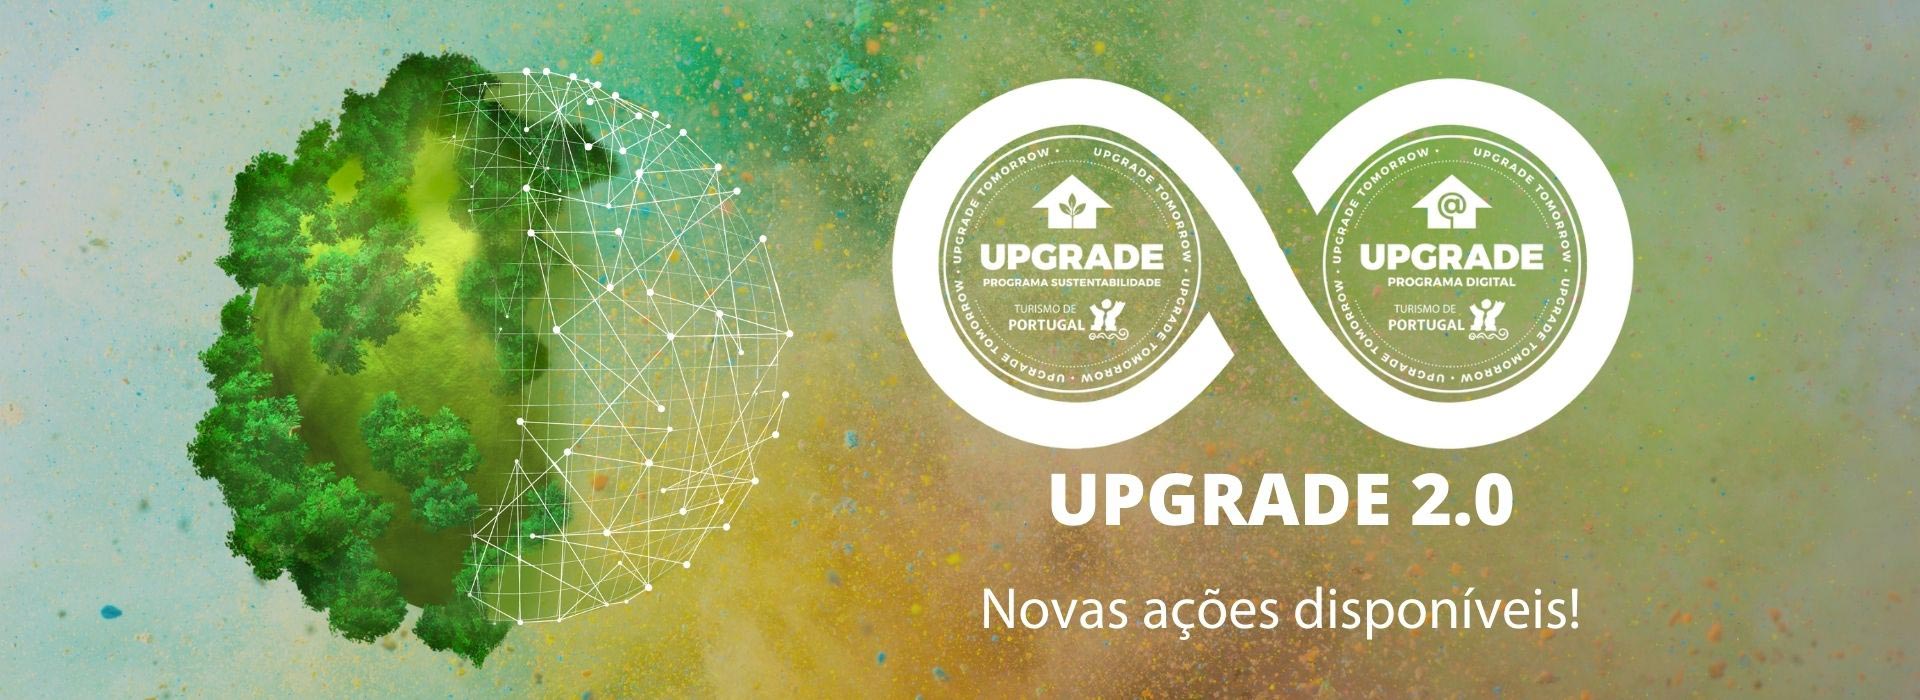 Teaser_Upgrade_Novasações